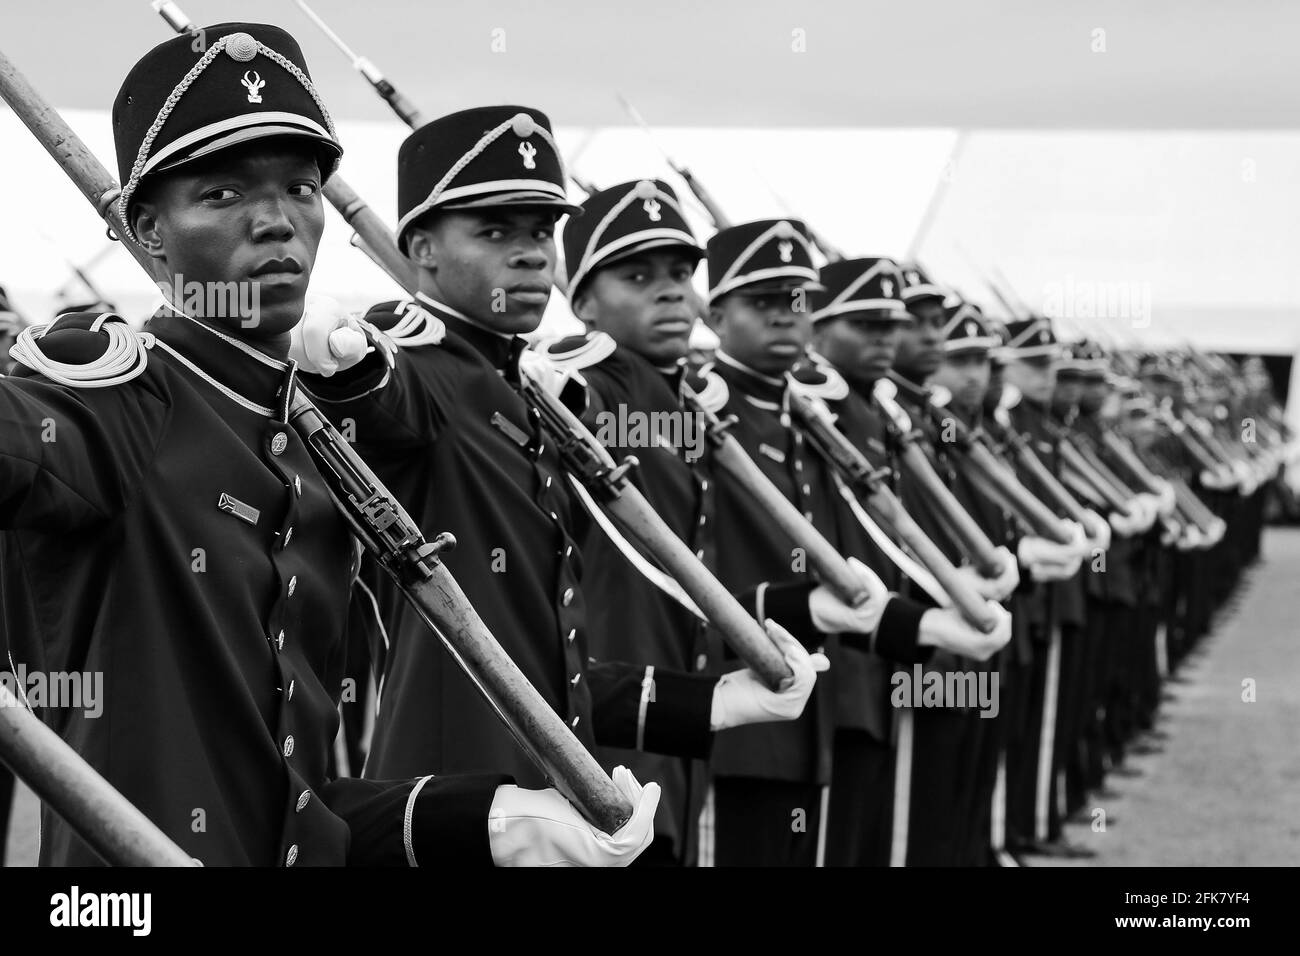 JOHANNESBURG, SÜDAFRIKA - 13. März 2021: Ermelo, Südafrika - 24 2011. September: Südafrikanische Soldaten der Verteidigungskräfte auf Parade Stockfoto